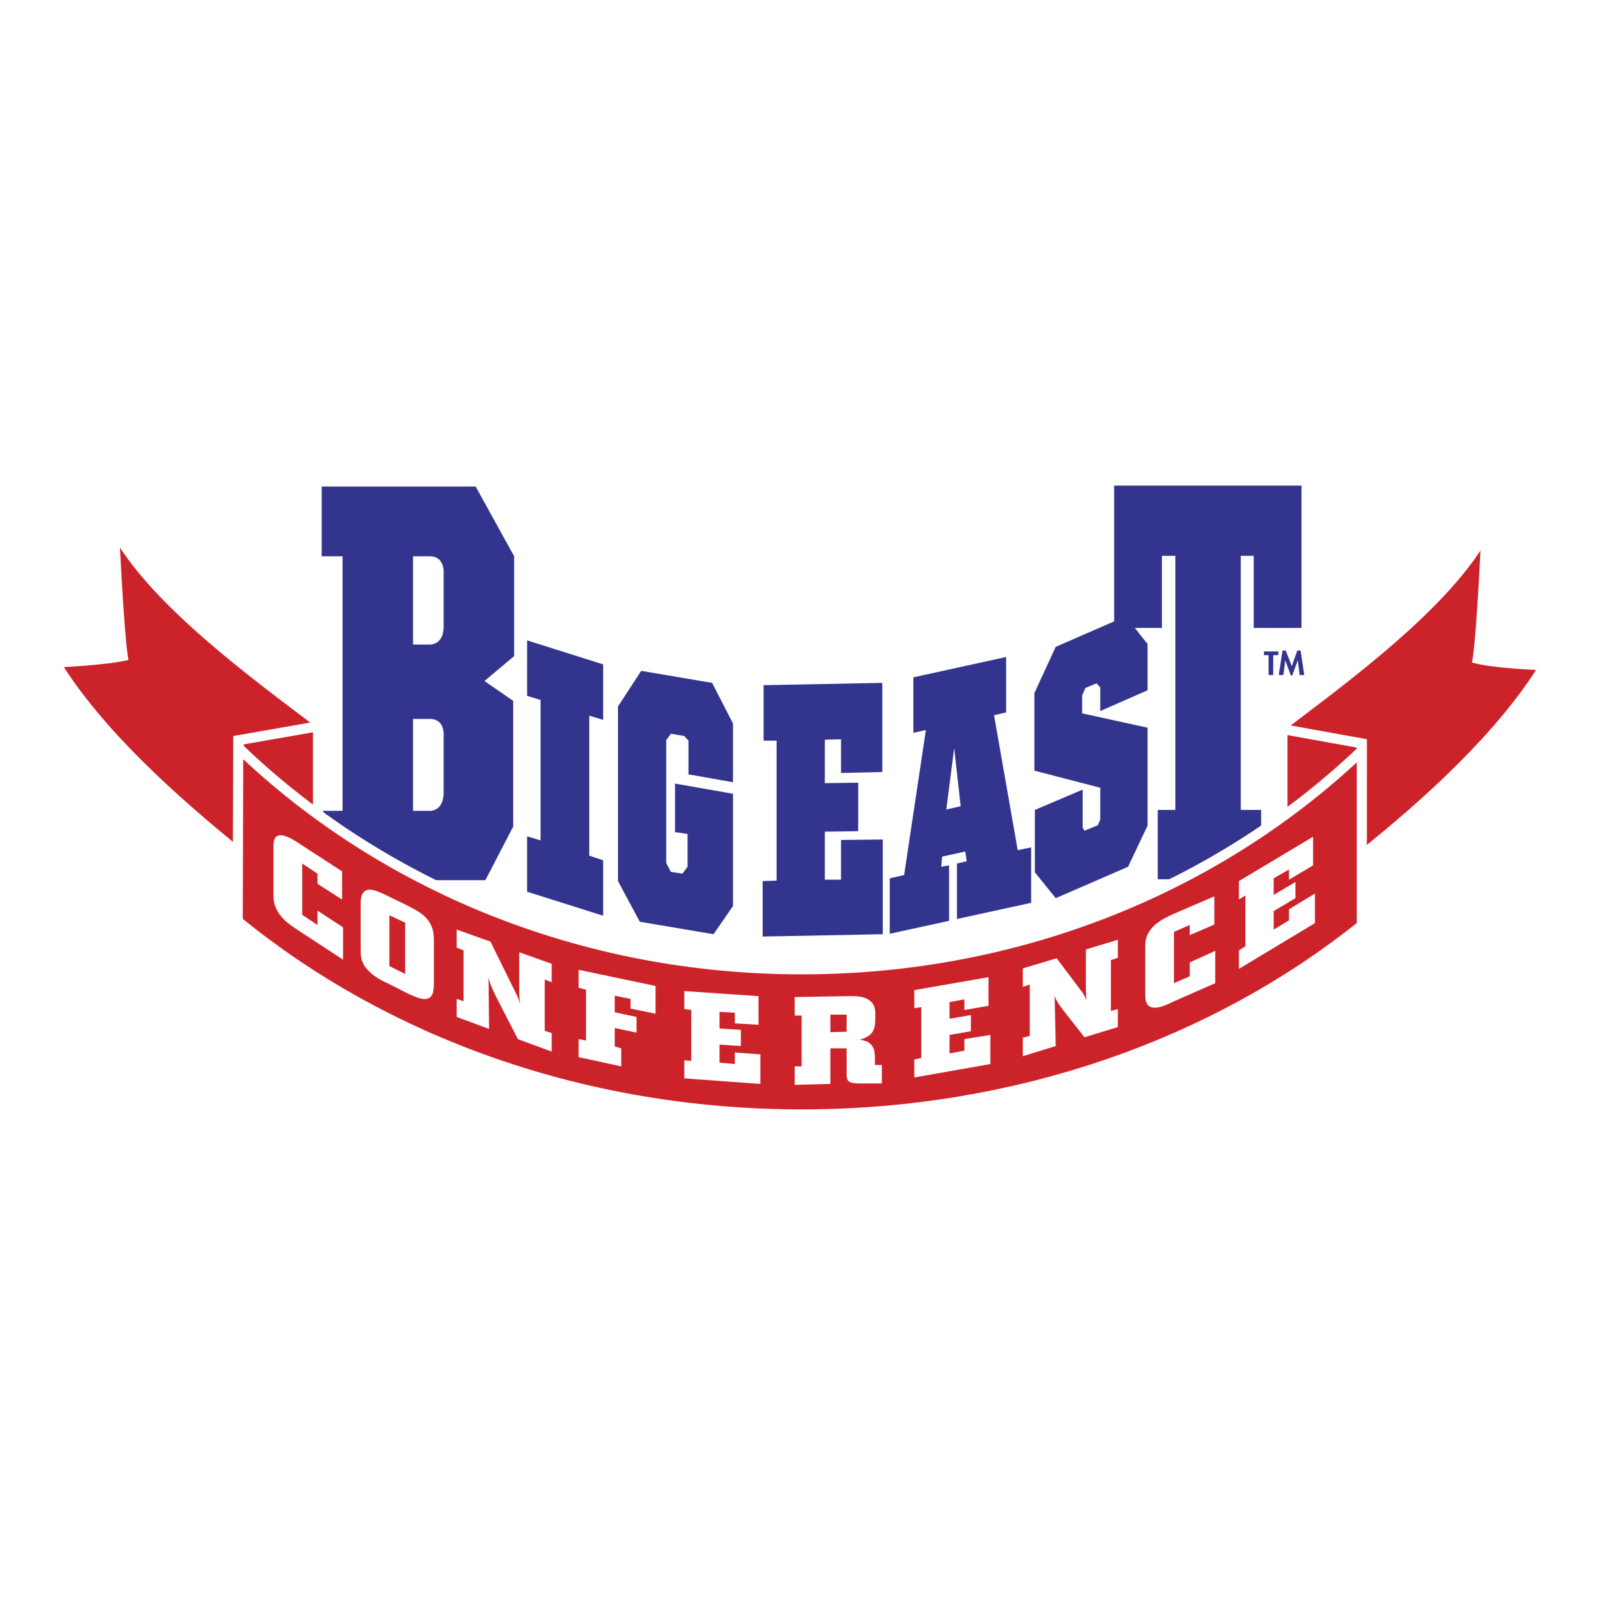 Big East Conference Logo